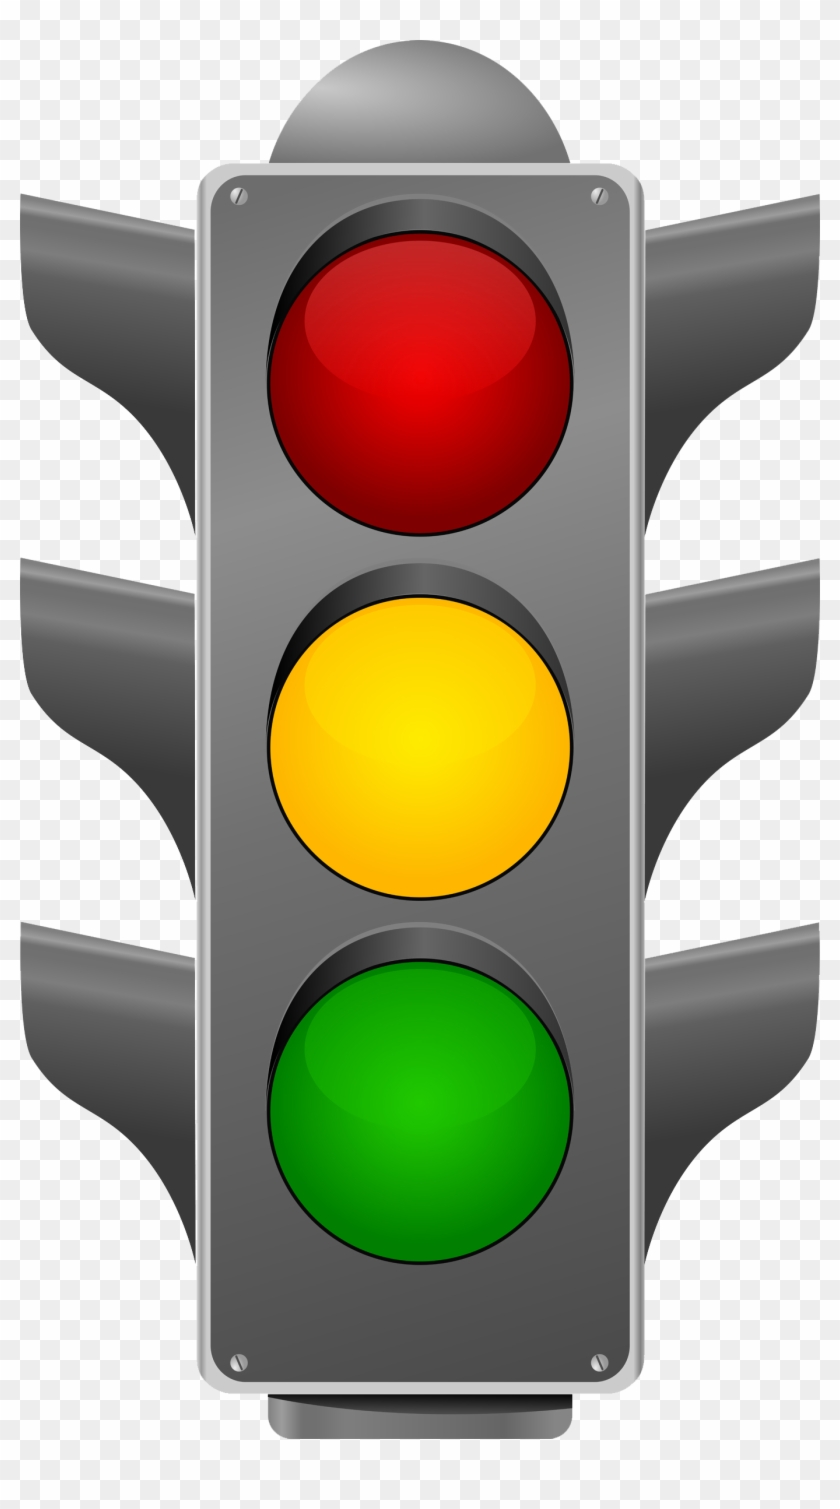 Traffic Light Png Transparent Images - Traffic Light Transparent Background #302438